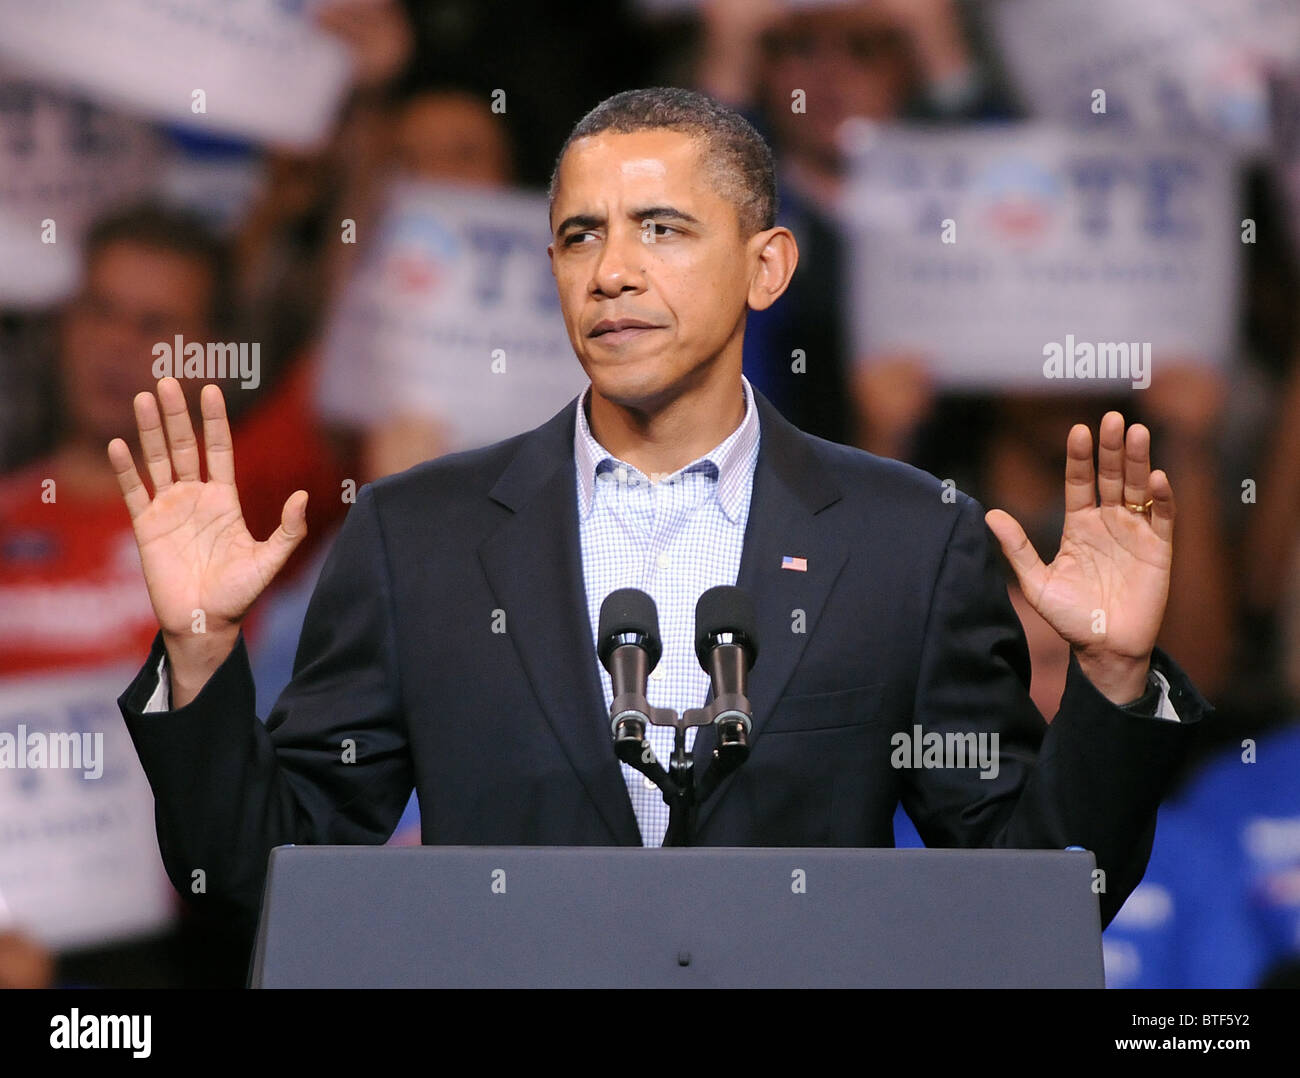 30.10.10 Bridgeport--spricht Präsident Barack Obama bei einer Kundgebung in Bridgeport CT USA Connecticut demokratischen Kandidaten unterstützen Stockfoto